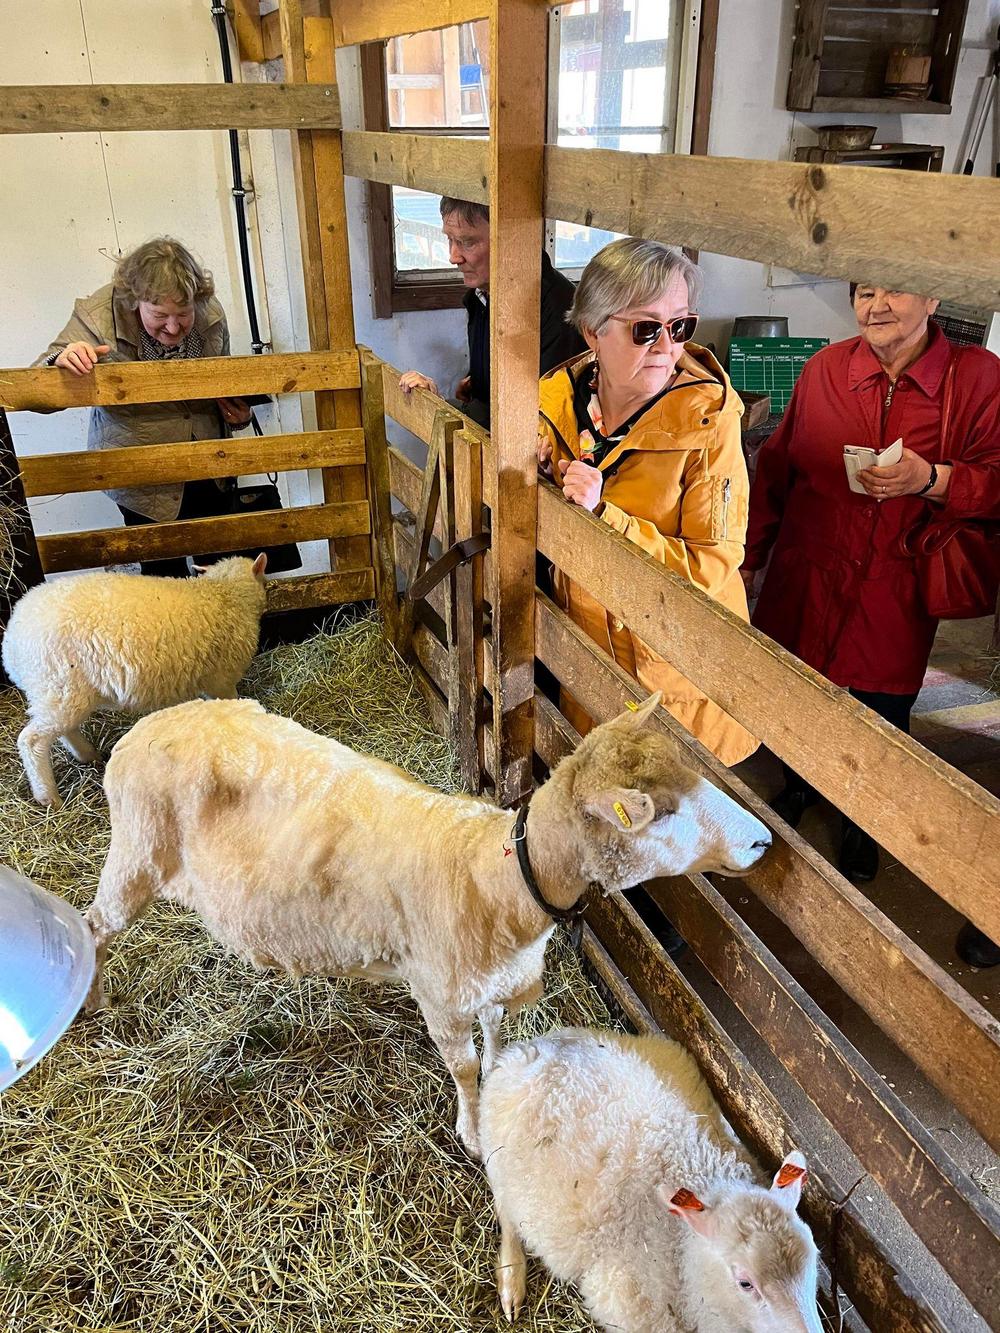 Retkeläisiä katsomassa lampaita lampolassa